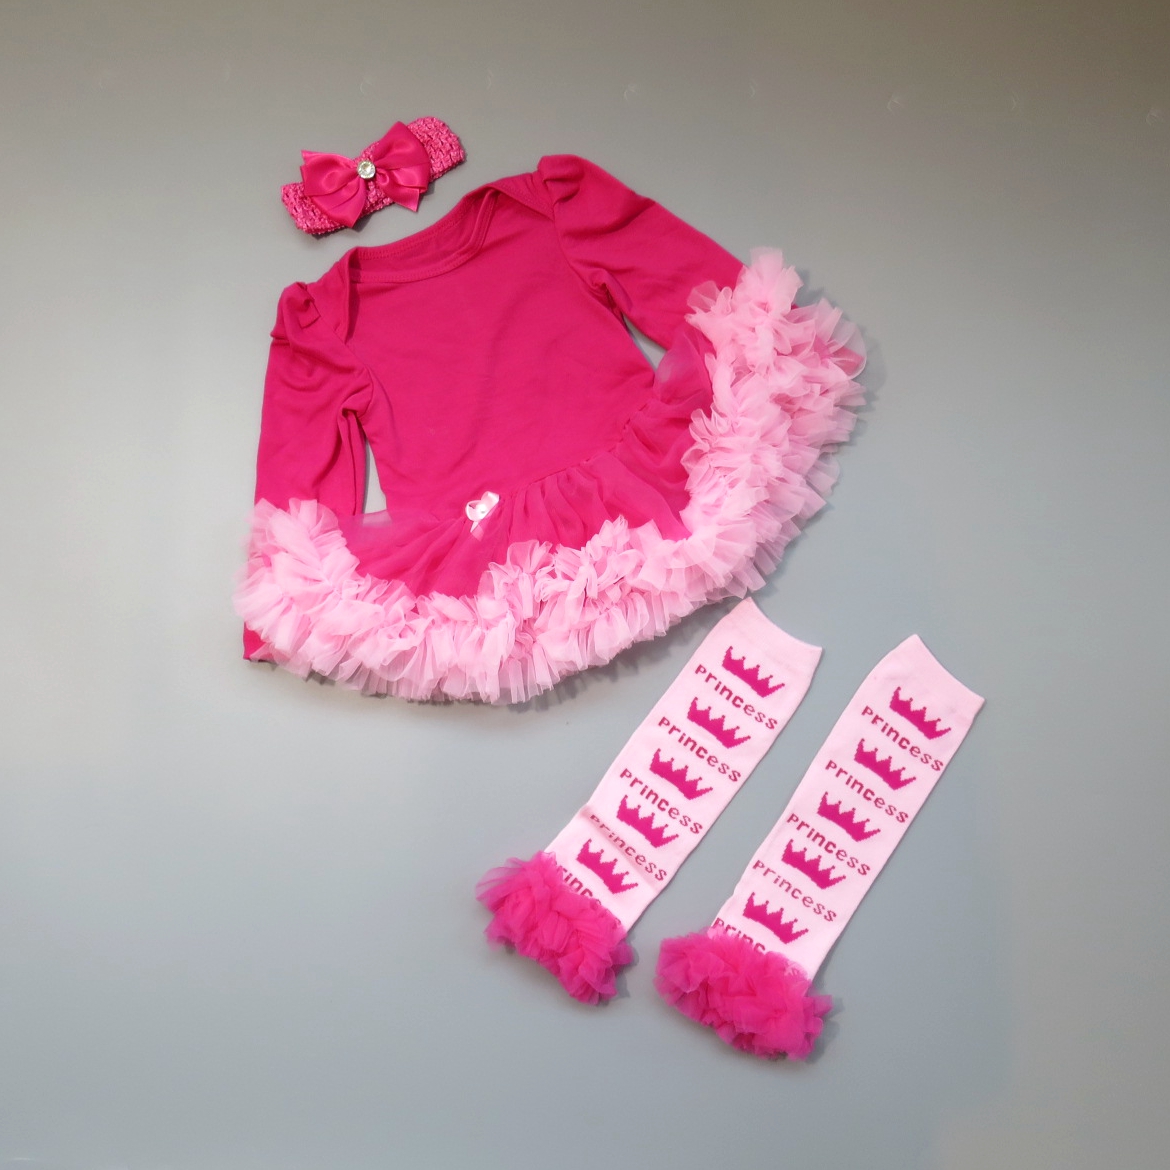 日安朵朵 女嬰精緻雪紡蓬蓬裙連身衣禮盒組 桃紅芭比 Barbie (網紗襪套 長袖蓬裙連身衣) (0-6個月)